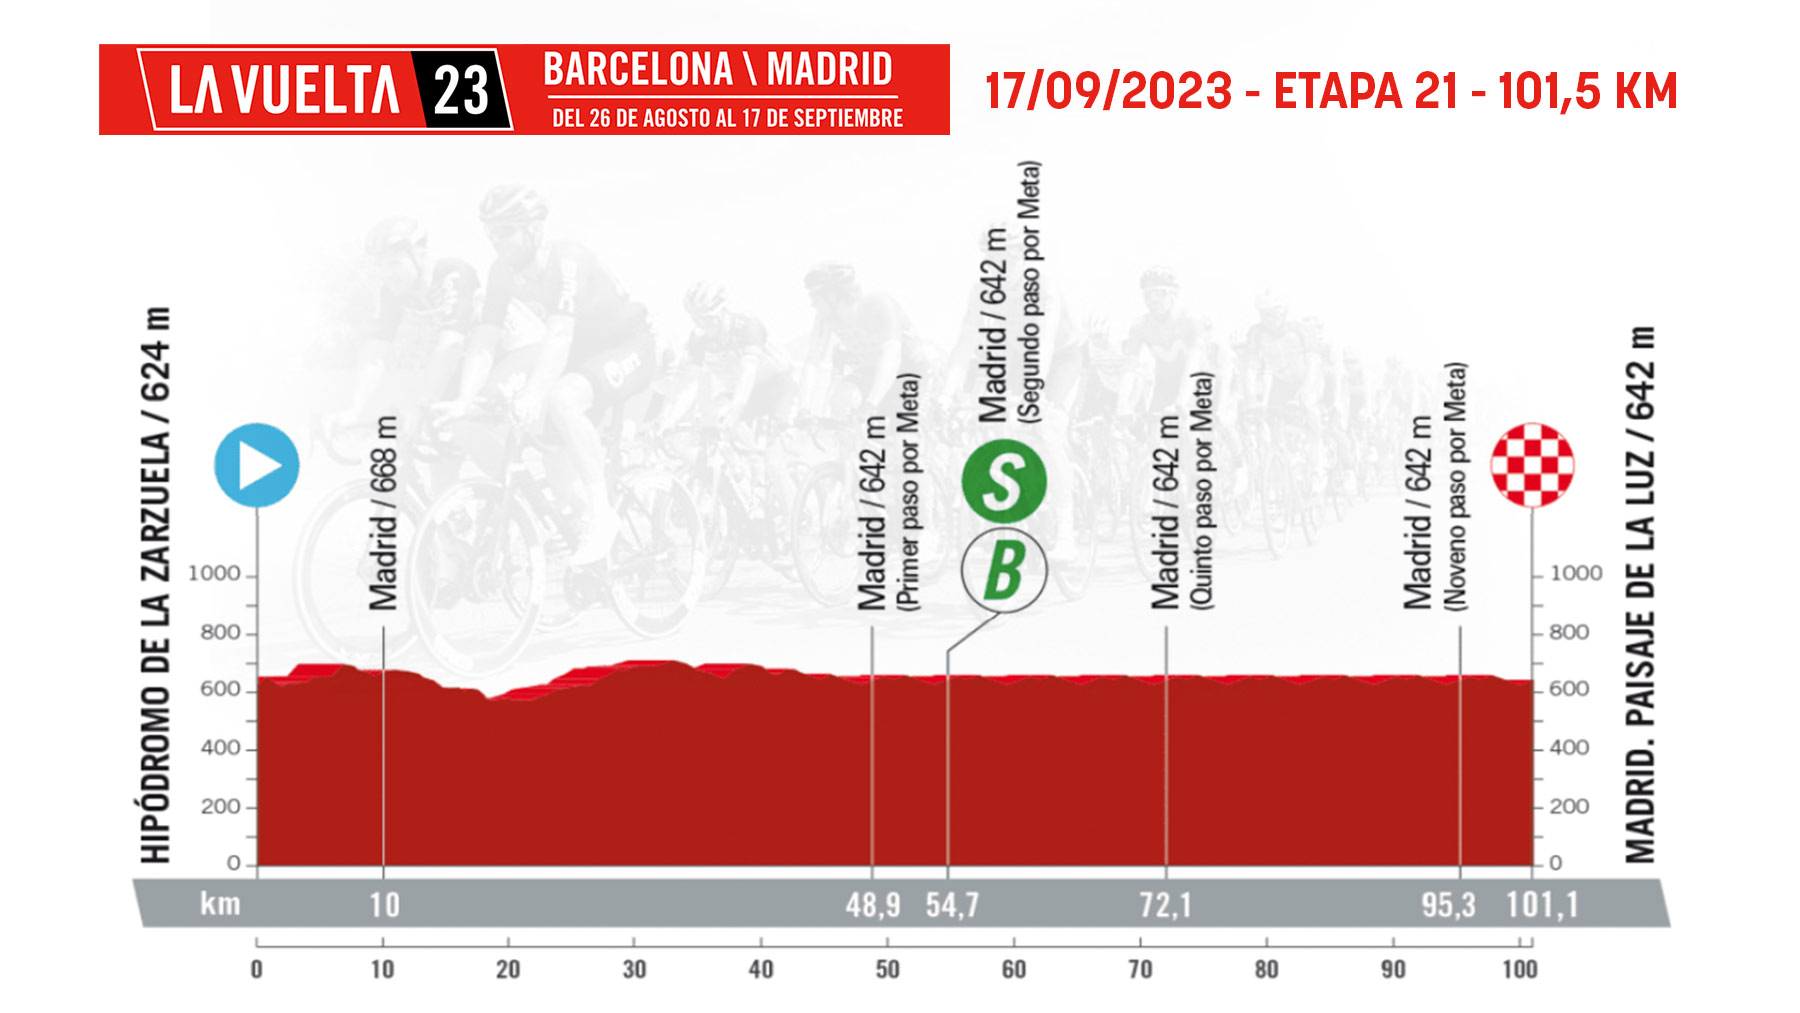 Etapa 21 de la Vuelta Ciclista a España 2023 hoy, domingo 17 de septiembre en Madrid.